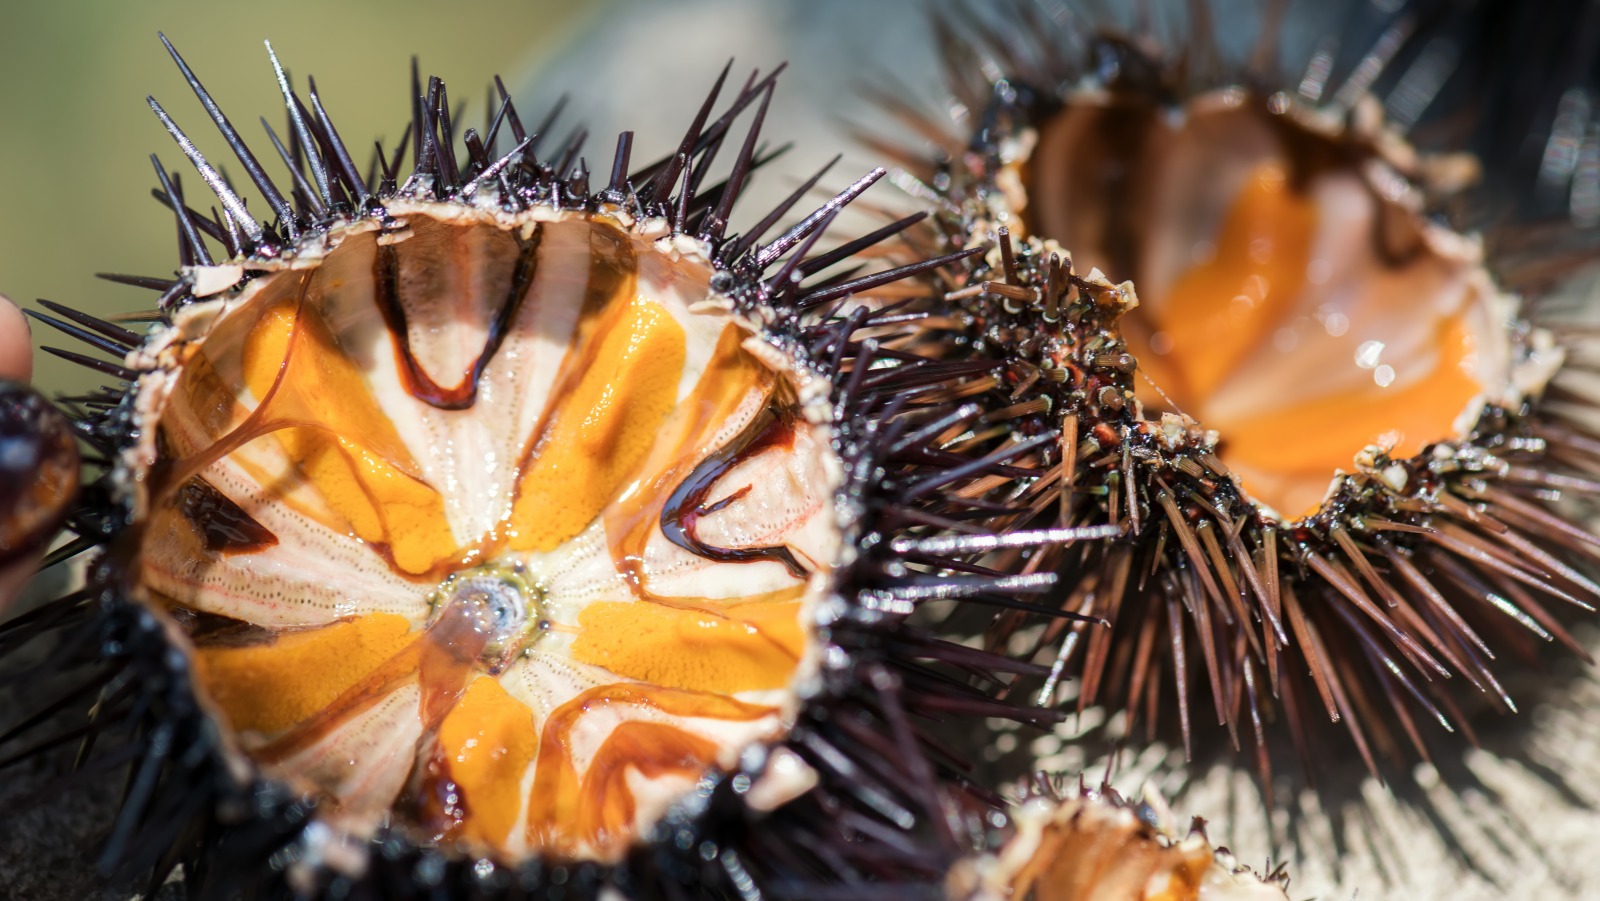 Uni (Sea Urchin) - Unique Ocean Delicacy • Just One Cookbook